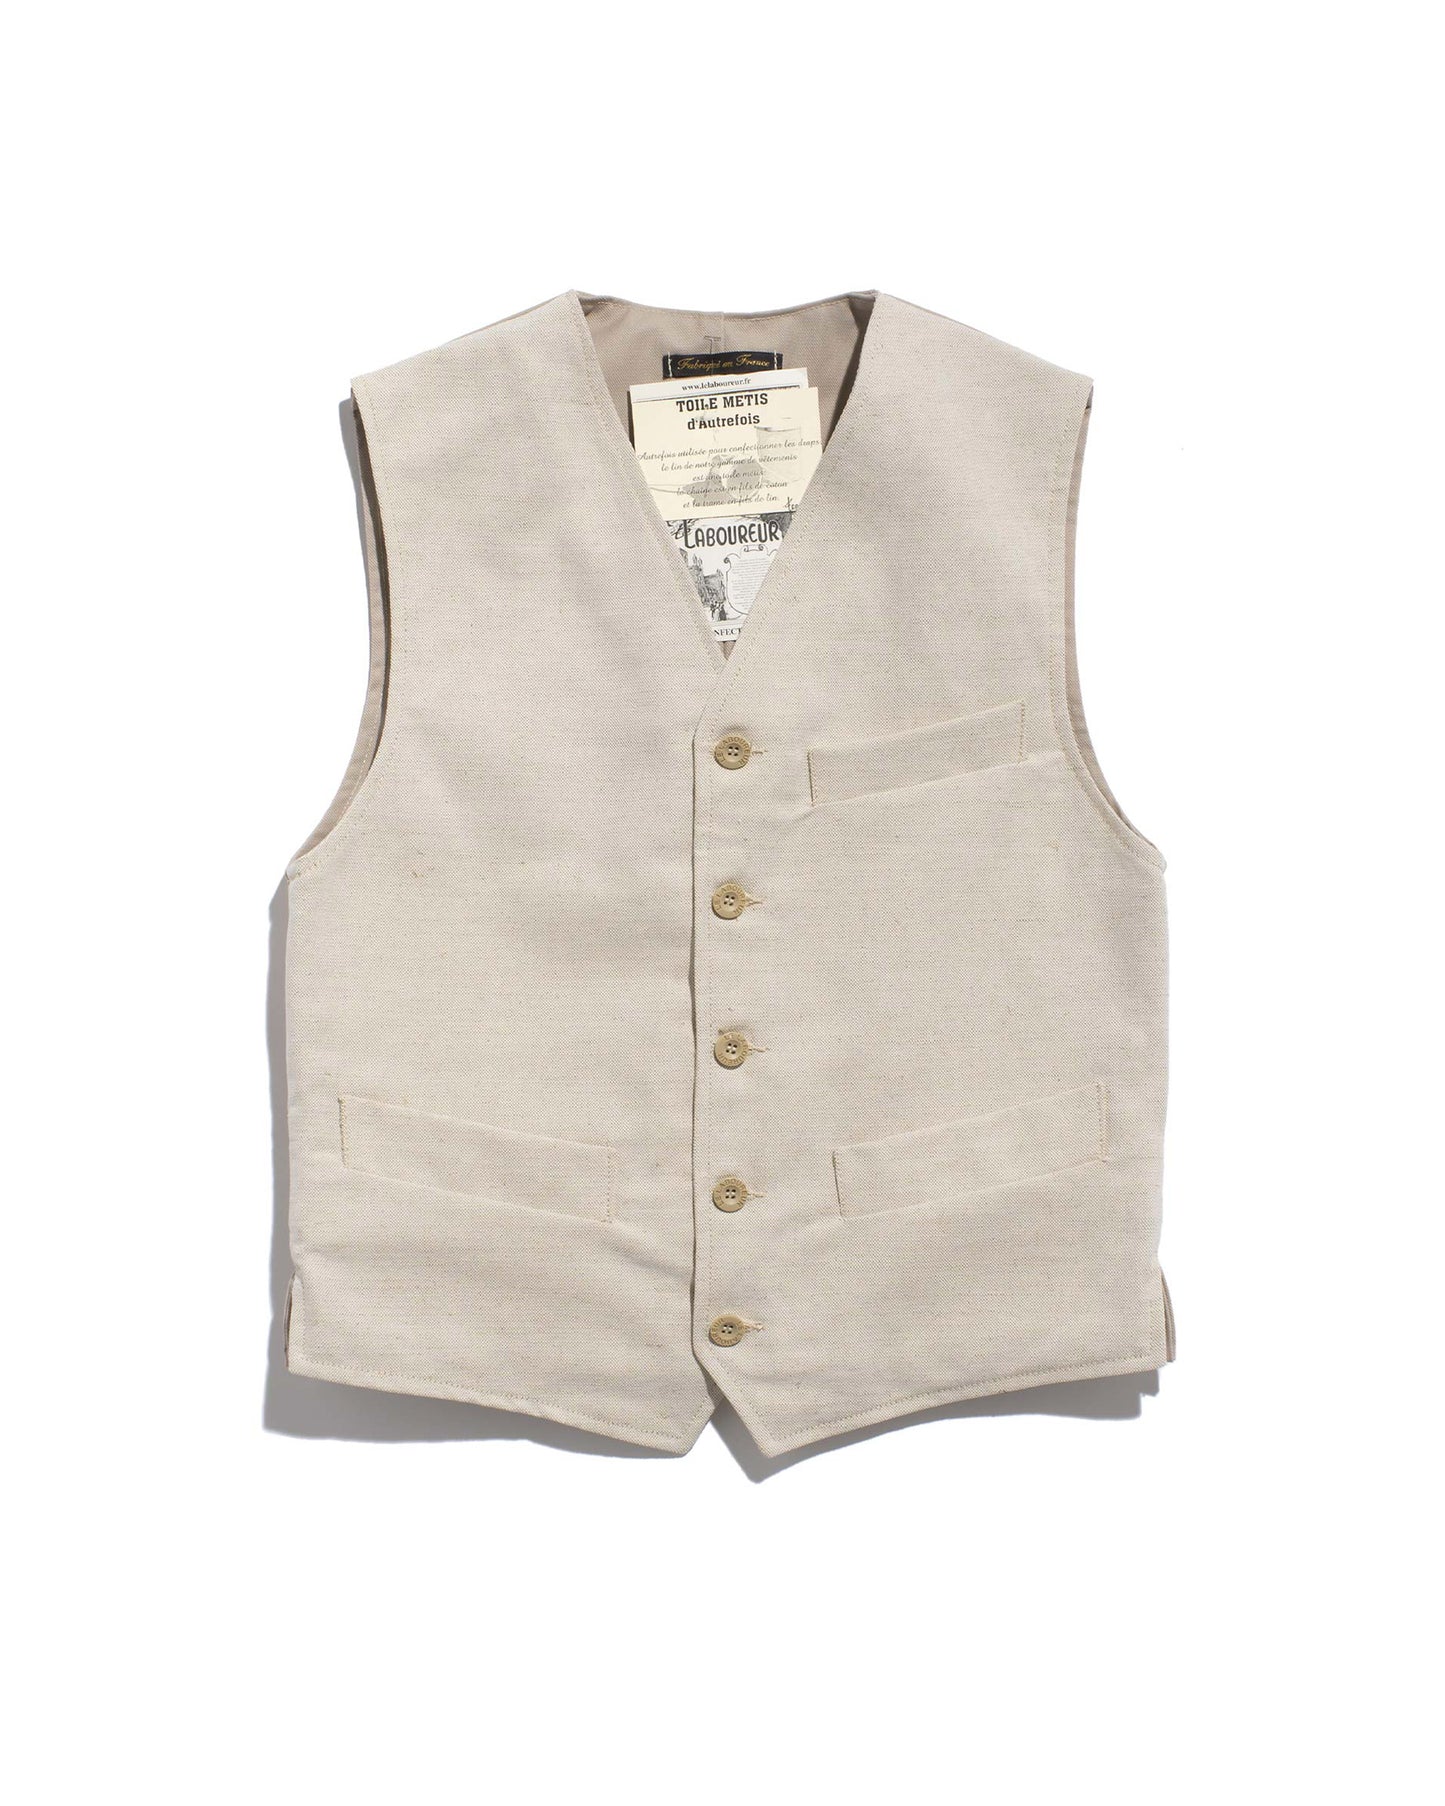 Le Laboureur vest in mixed linen/ecru cotton